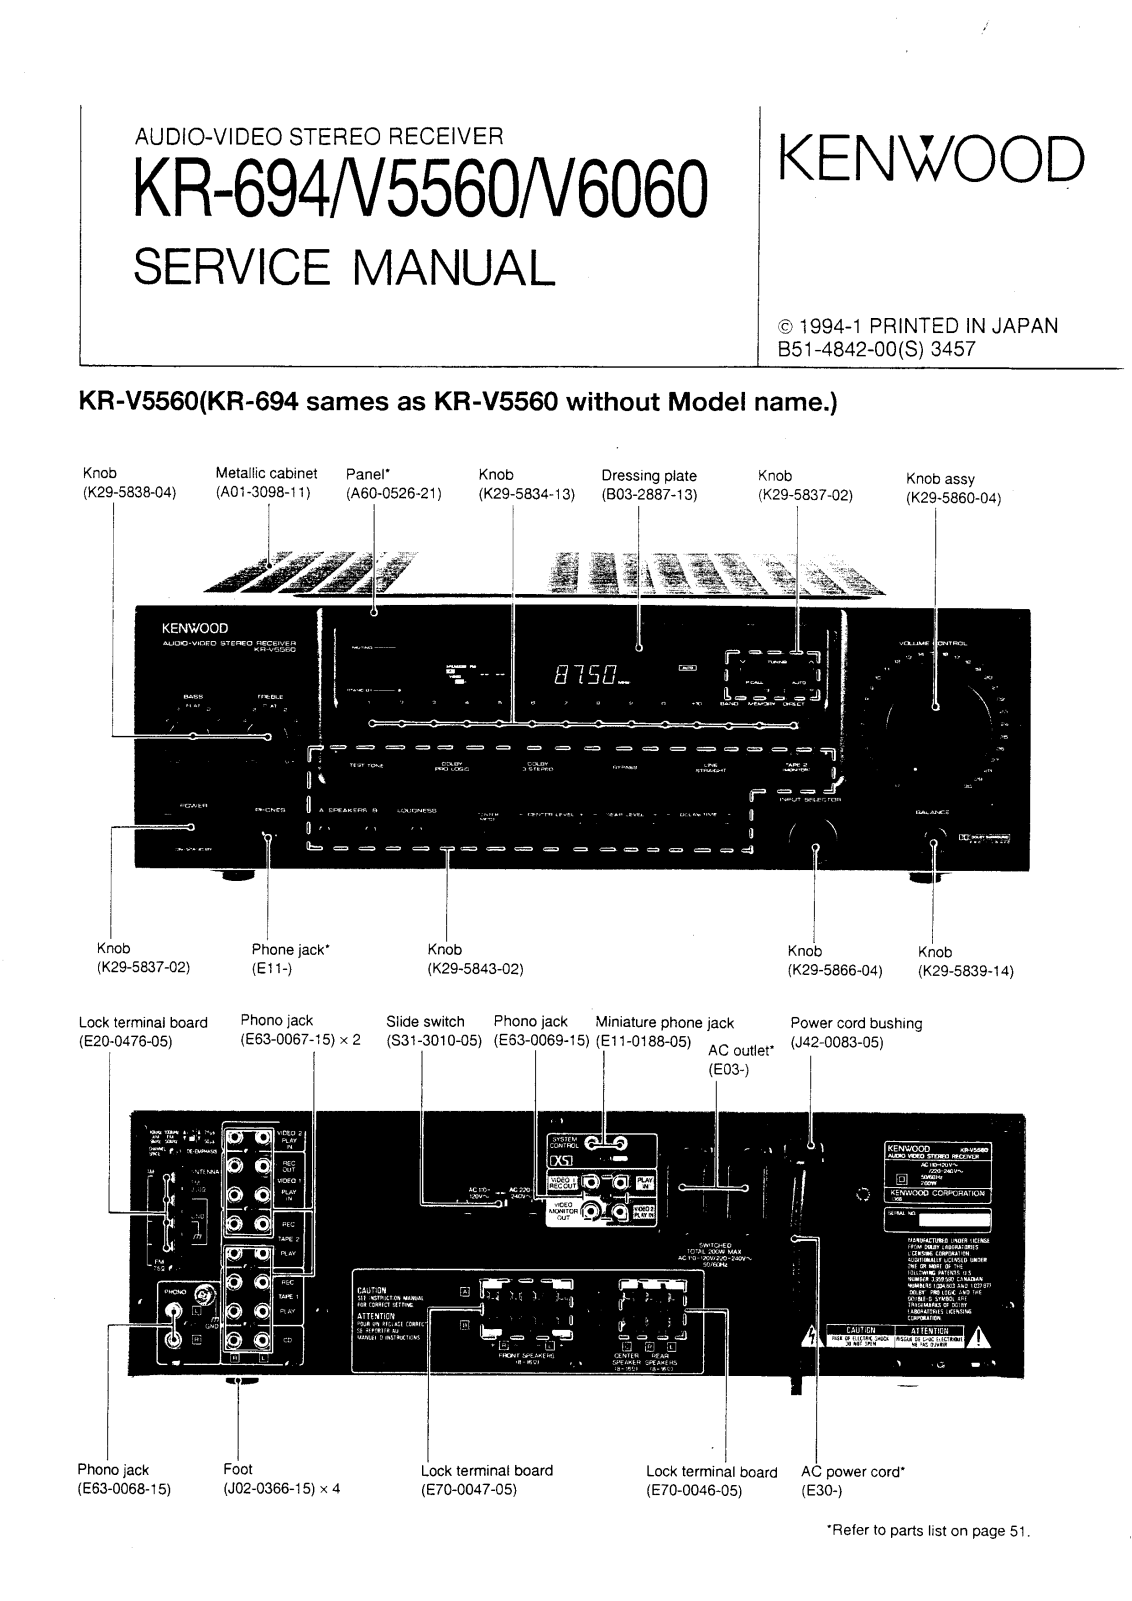 Kenwood KR-694, KRV-5560, KRV-6060 Service manual